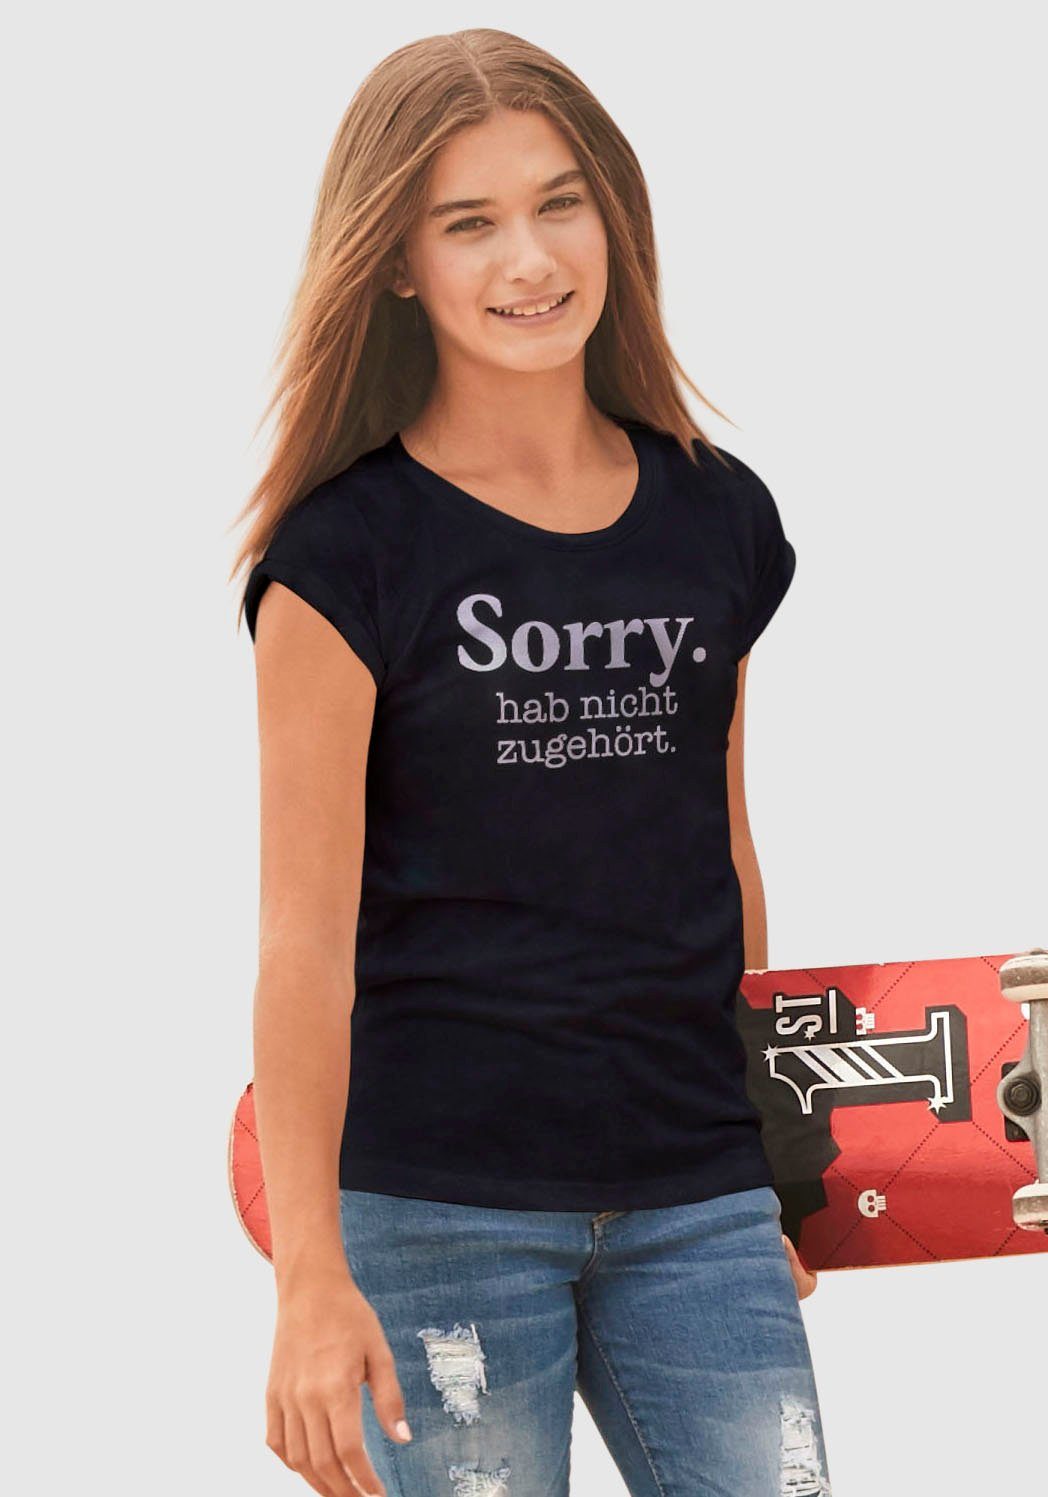 legerer zugehört. weiter T-Shirt Sorry. nicht Form hab in KIDSWORLD